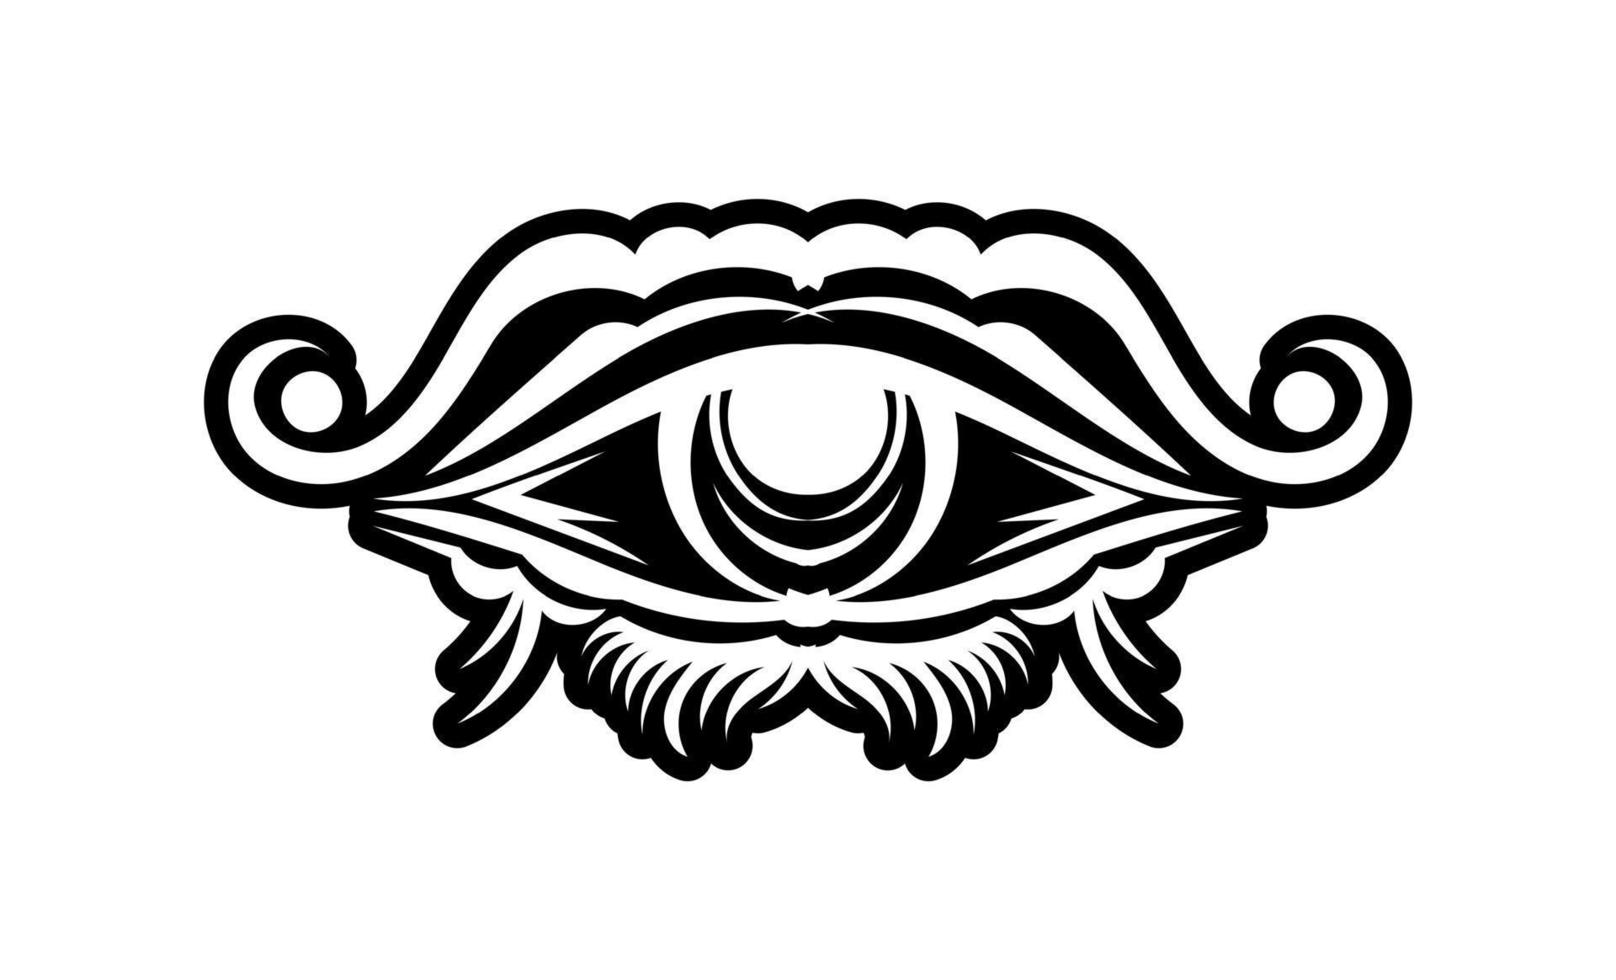 tatuaggio vintage con occhio luminoso onniveggente, simbolo mistico, design boho. disegno a mano isolato su sfondo bianco, geometria sacra, preveggenza e magia. illustrazione vettoriale